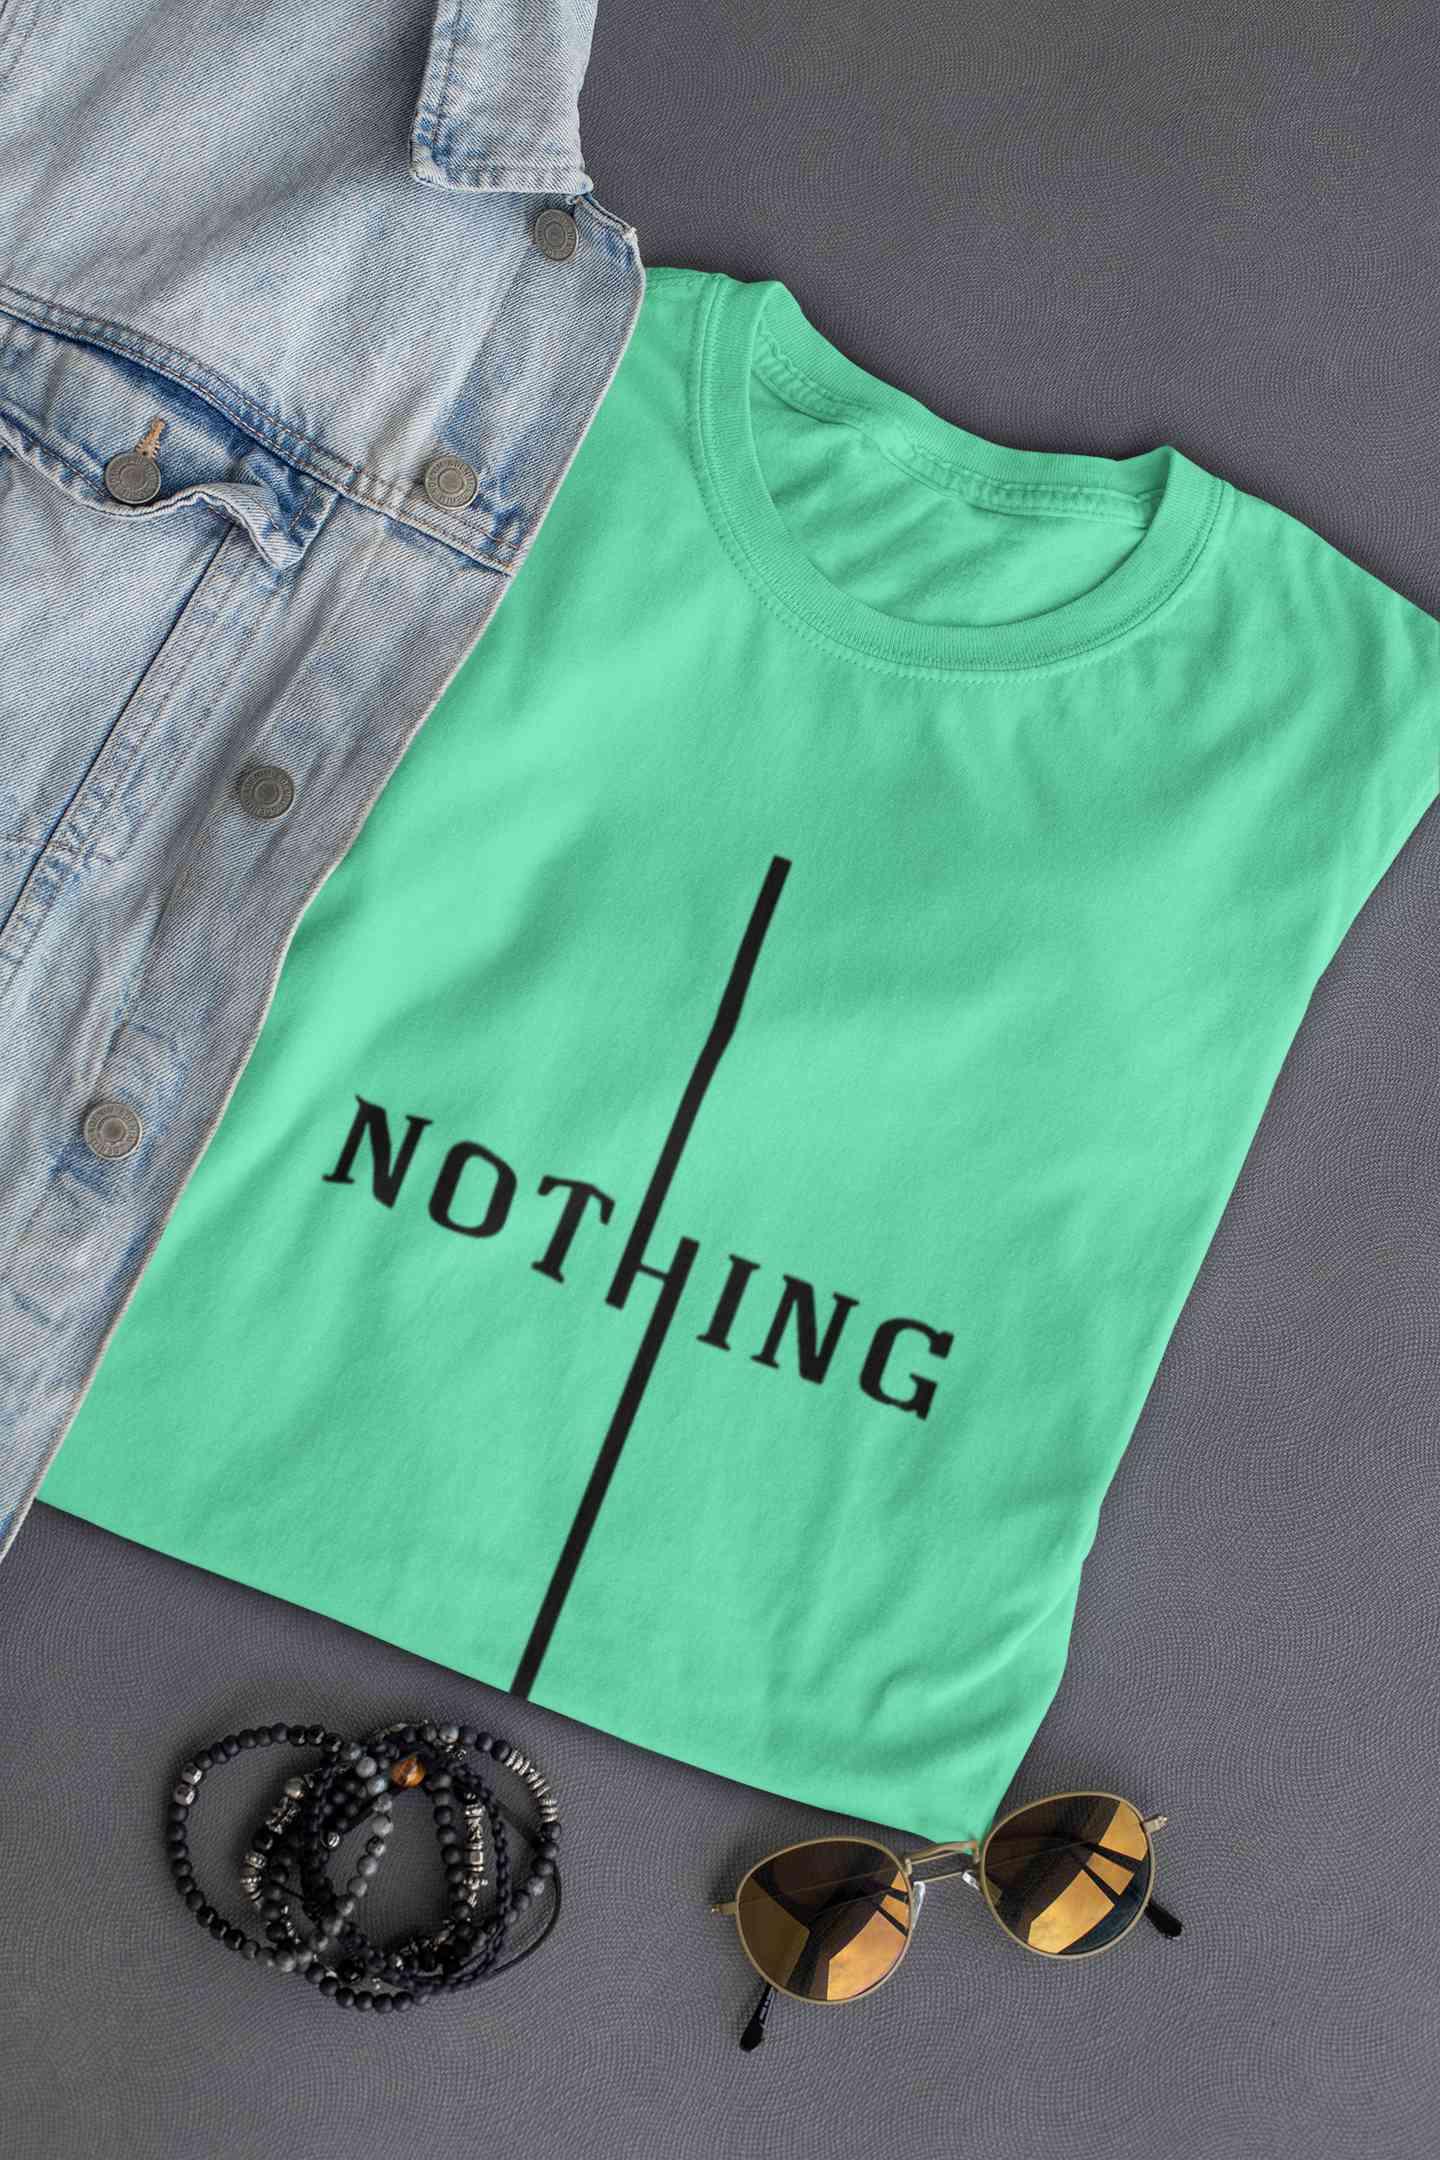 Nothing Mens Half Sleeves T-shirt- FunkyTeesClub